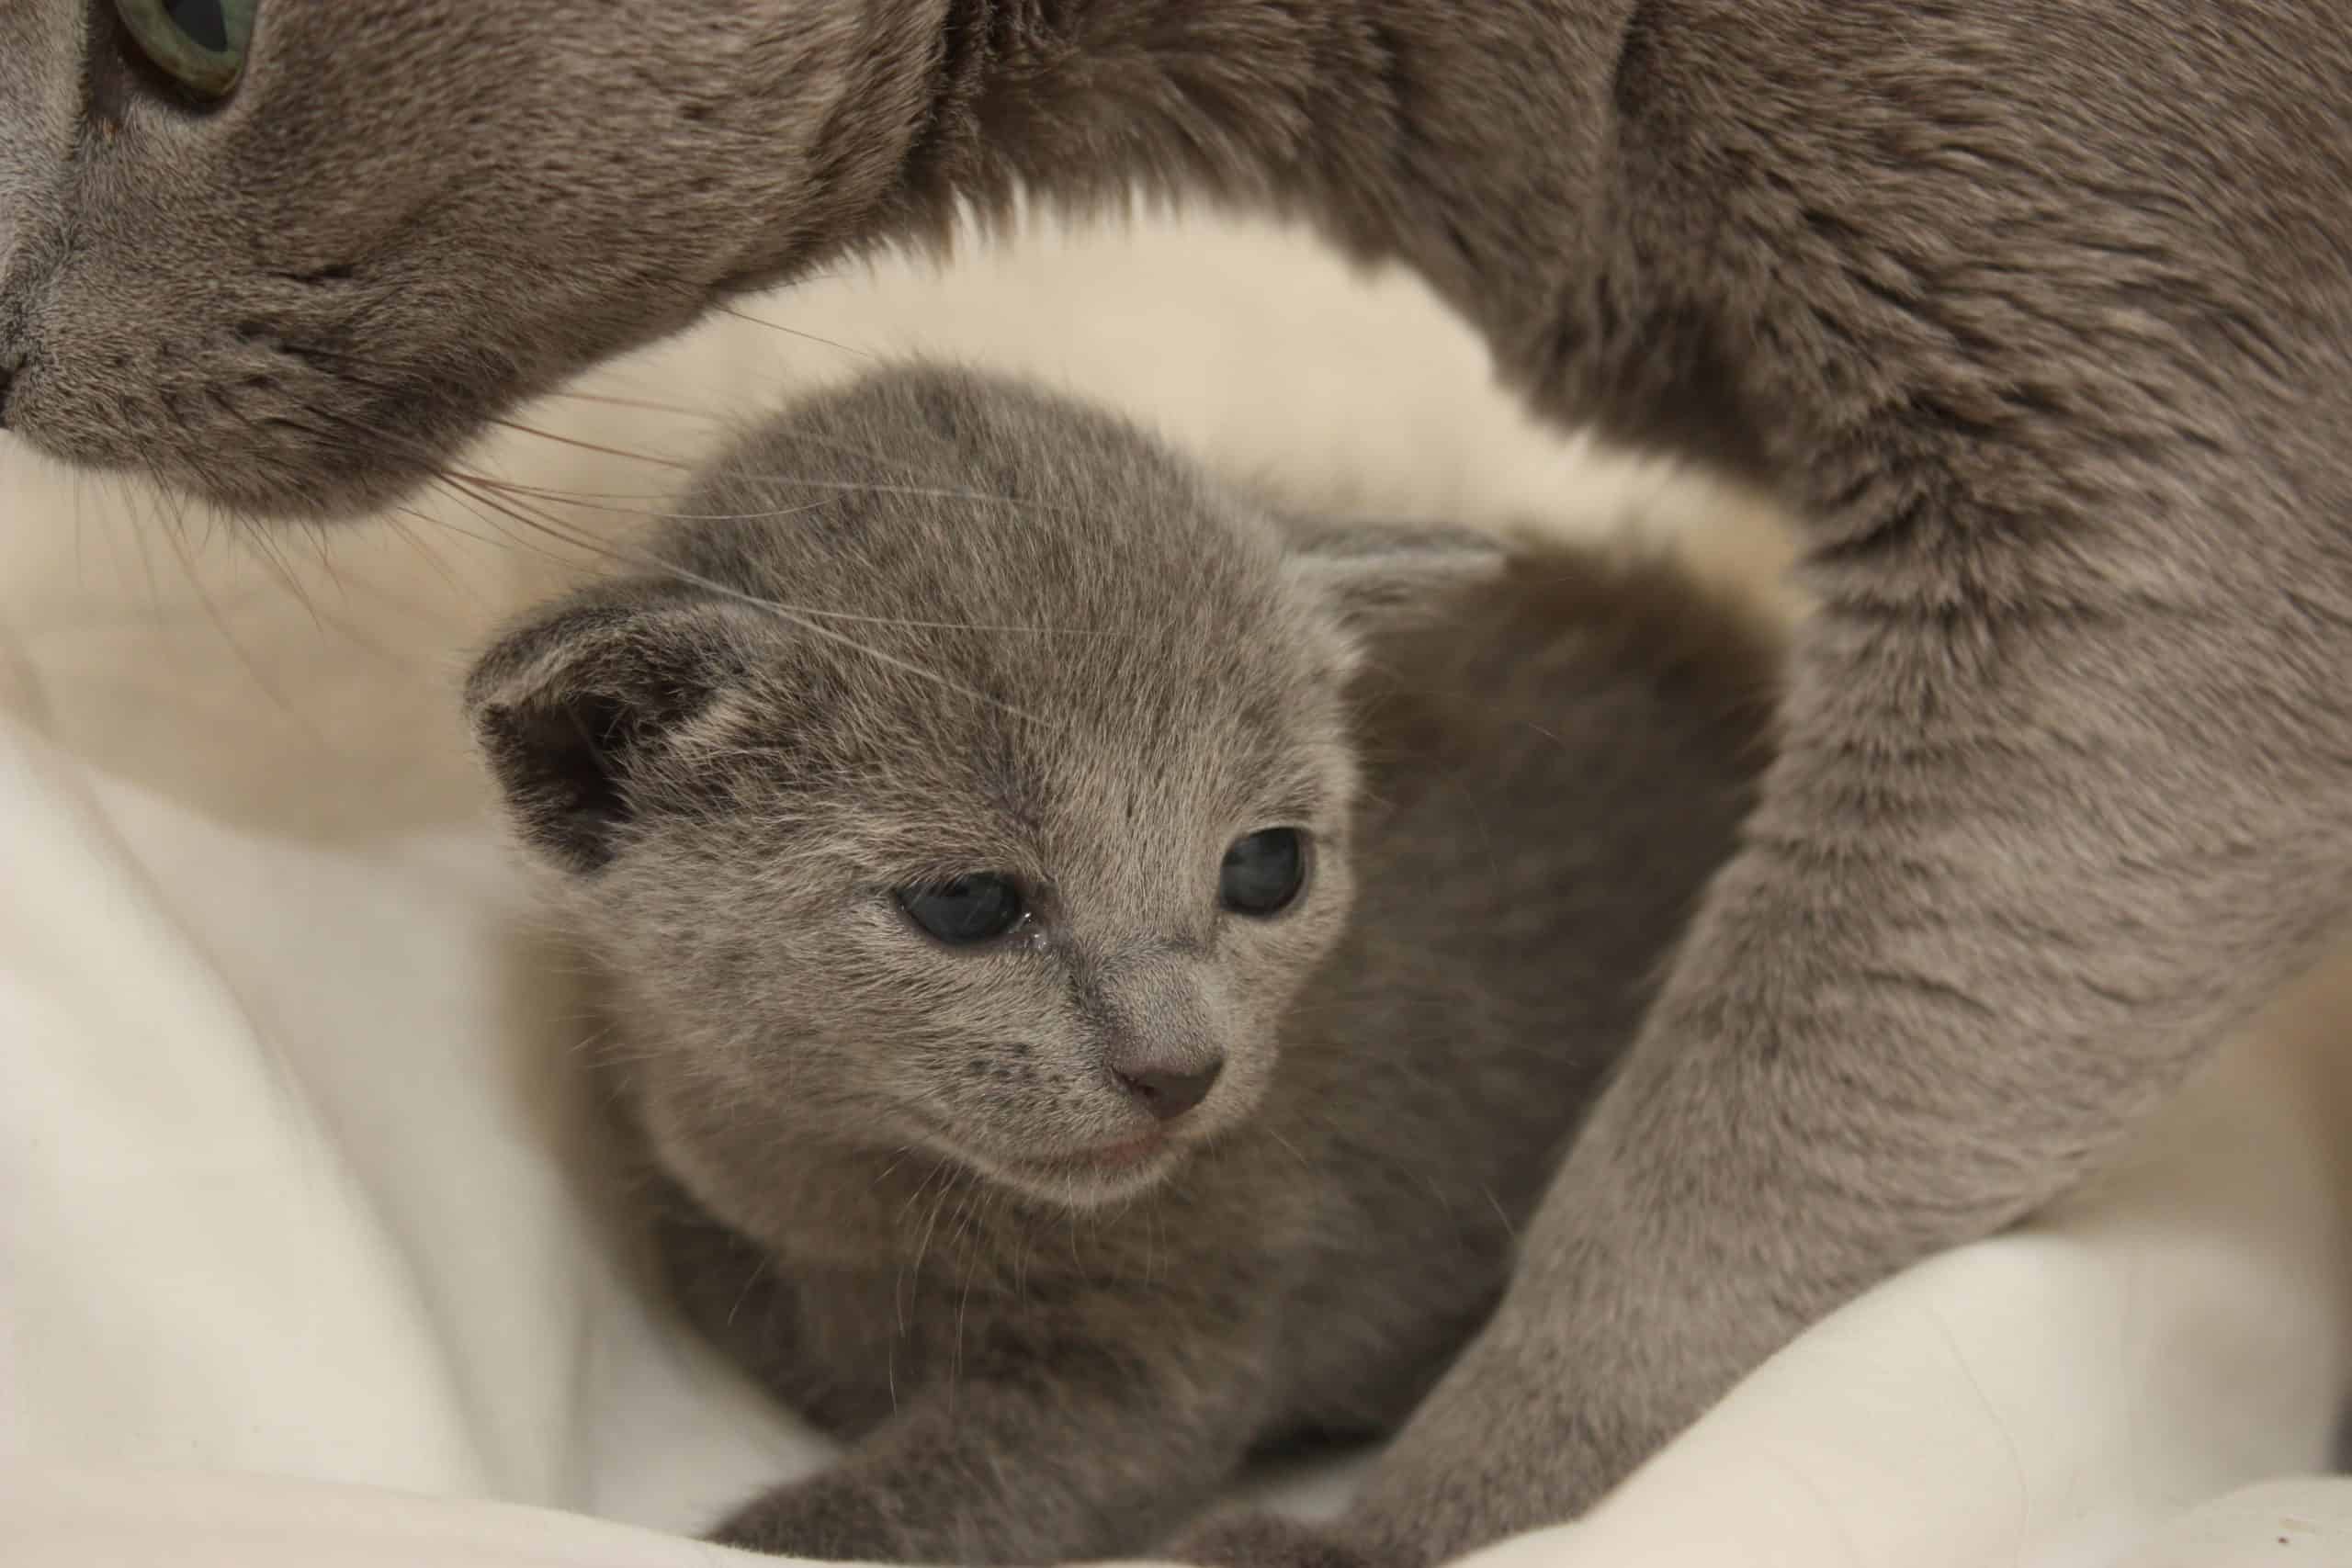 Russian Blue-kattunge från Ärkeängelns uppfödning ligger på en vit filt med sin mamma i bakgrunden